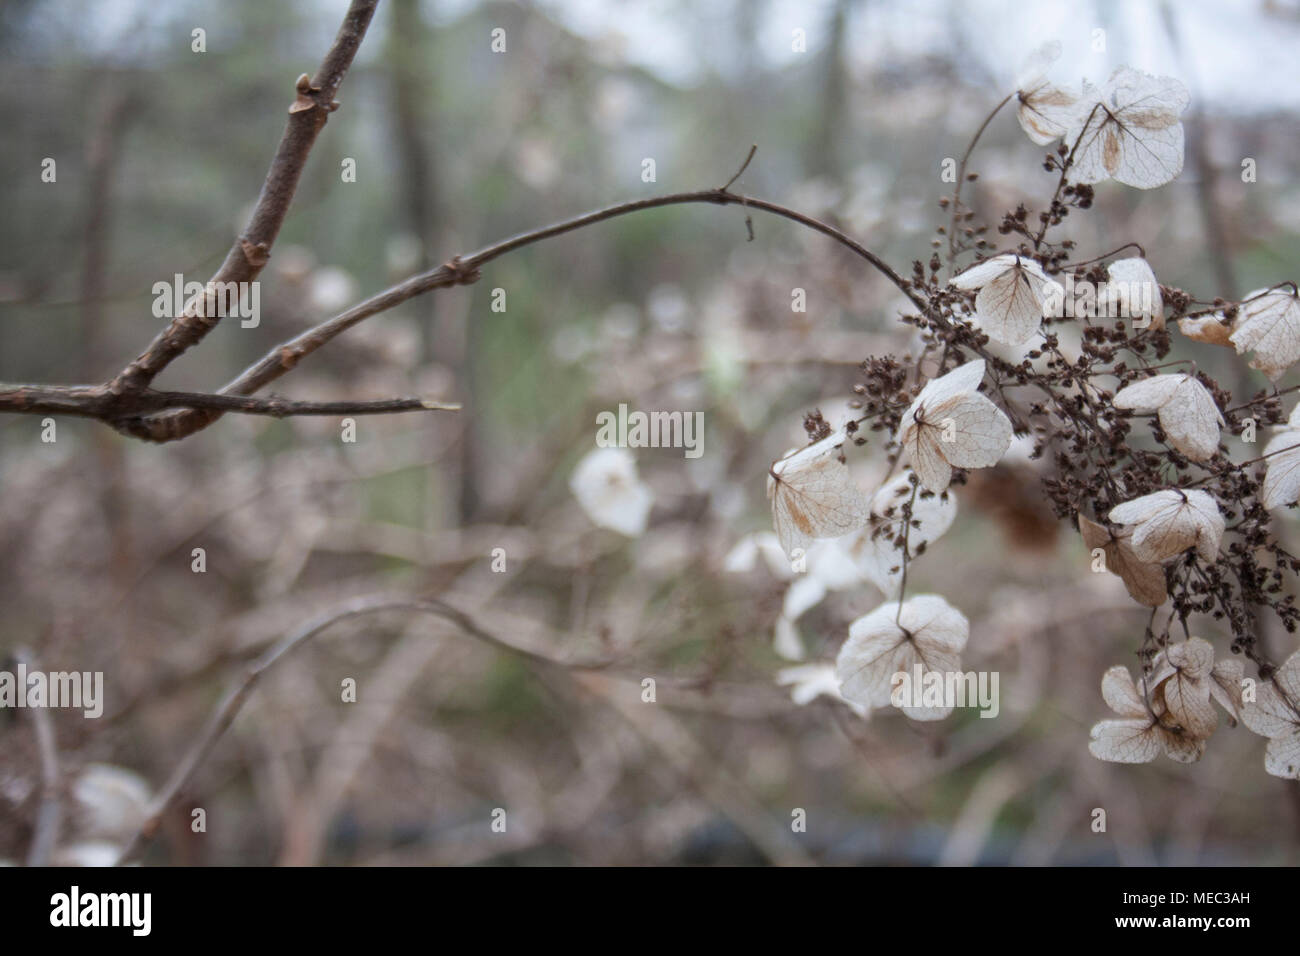 Fotografía de fondo de brown hydrangea flores secas en un jardín de invierno. Foto de stock